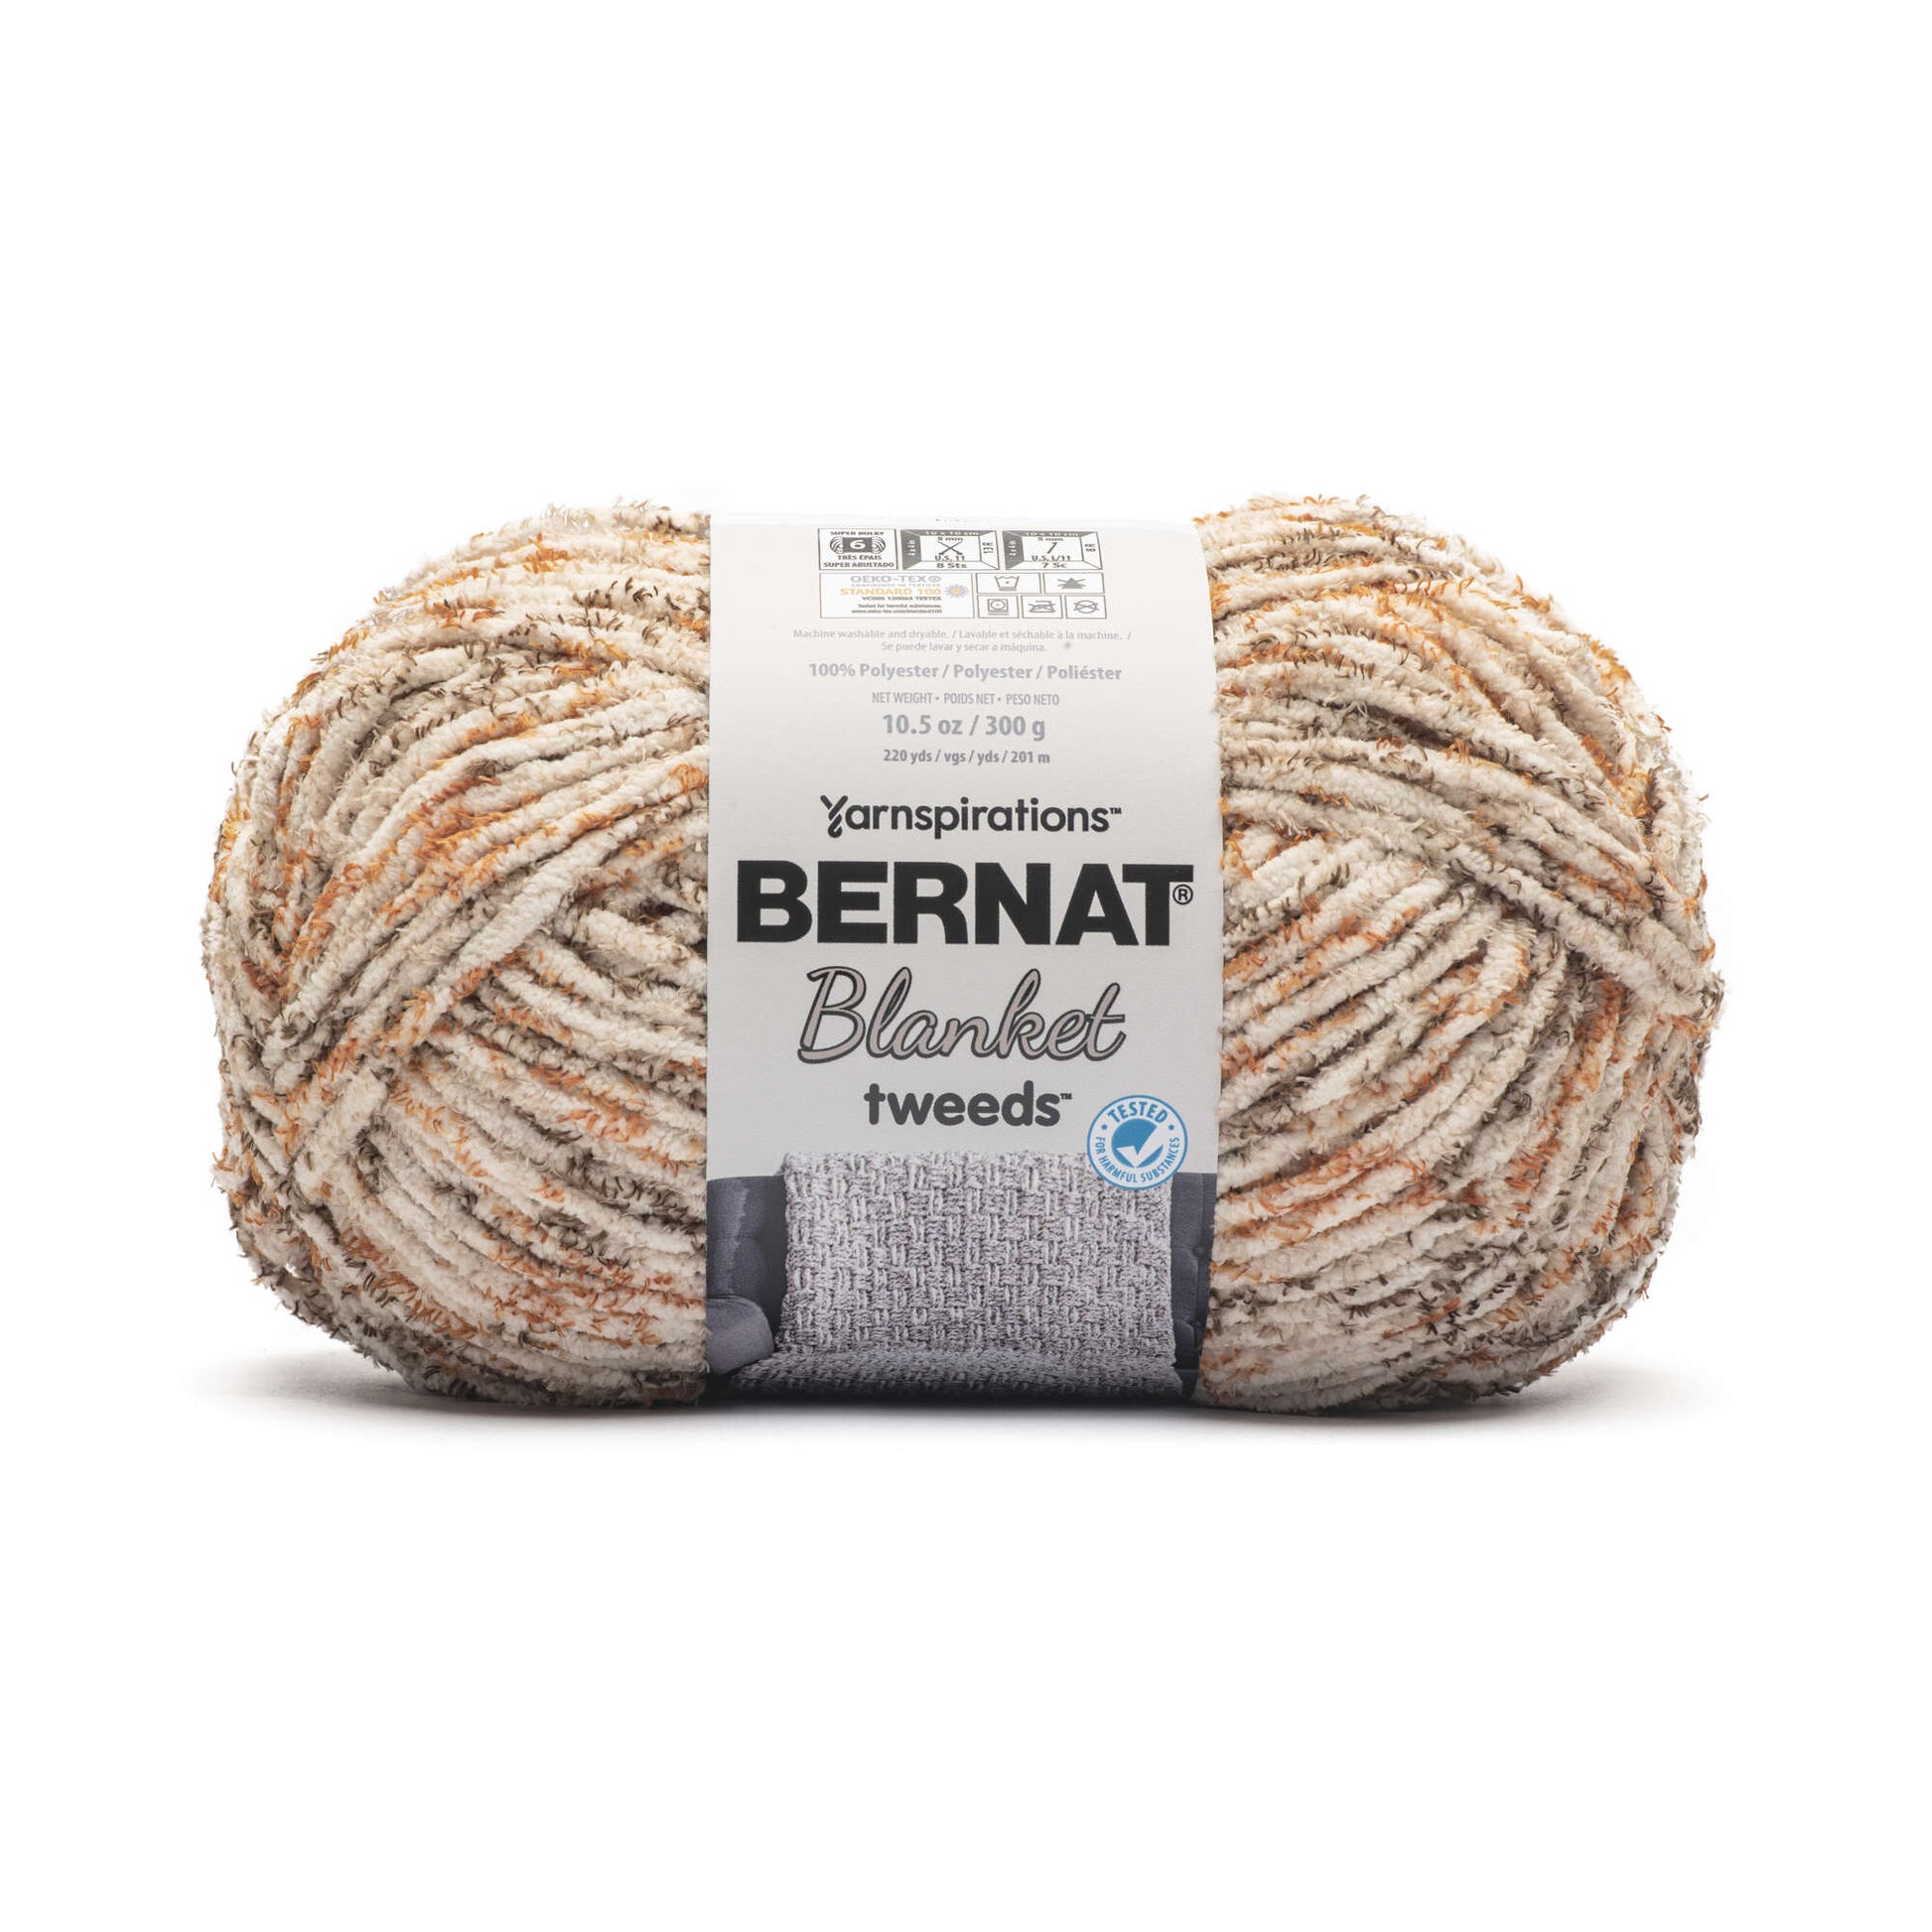 Bernat Blanket Tweeds Yarn (300g/10.5oz) Woodland Tweed